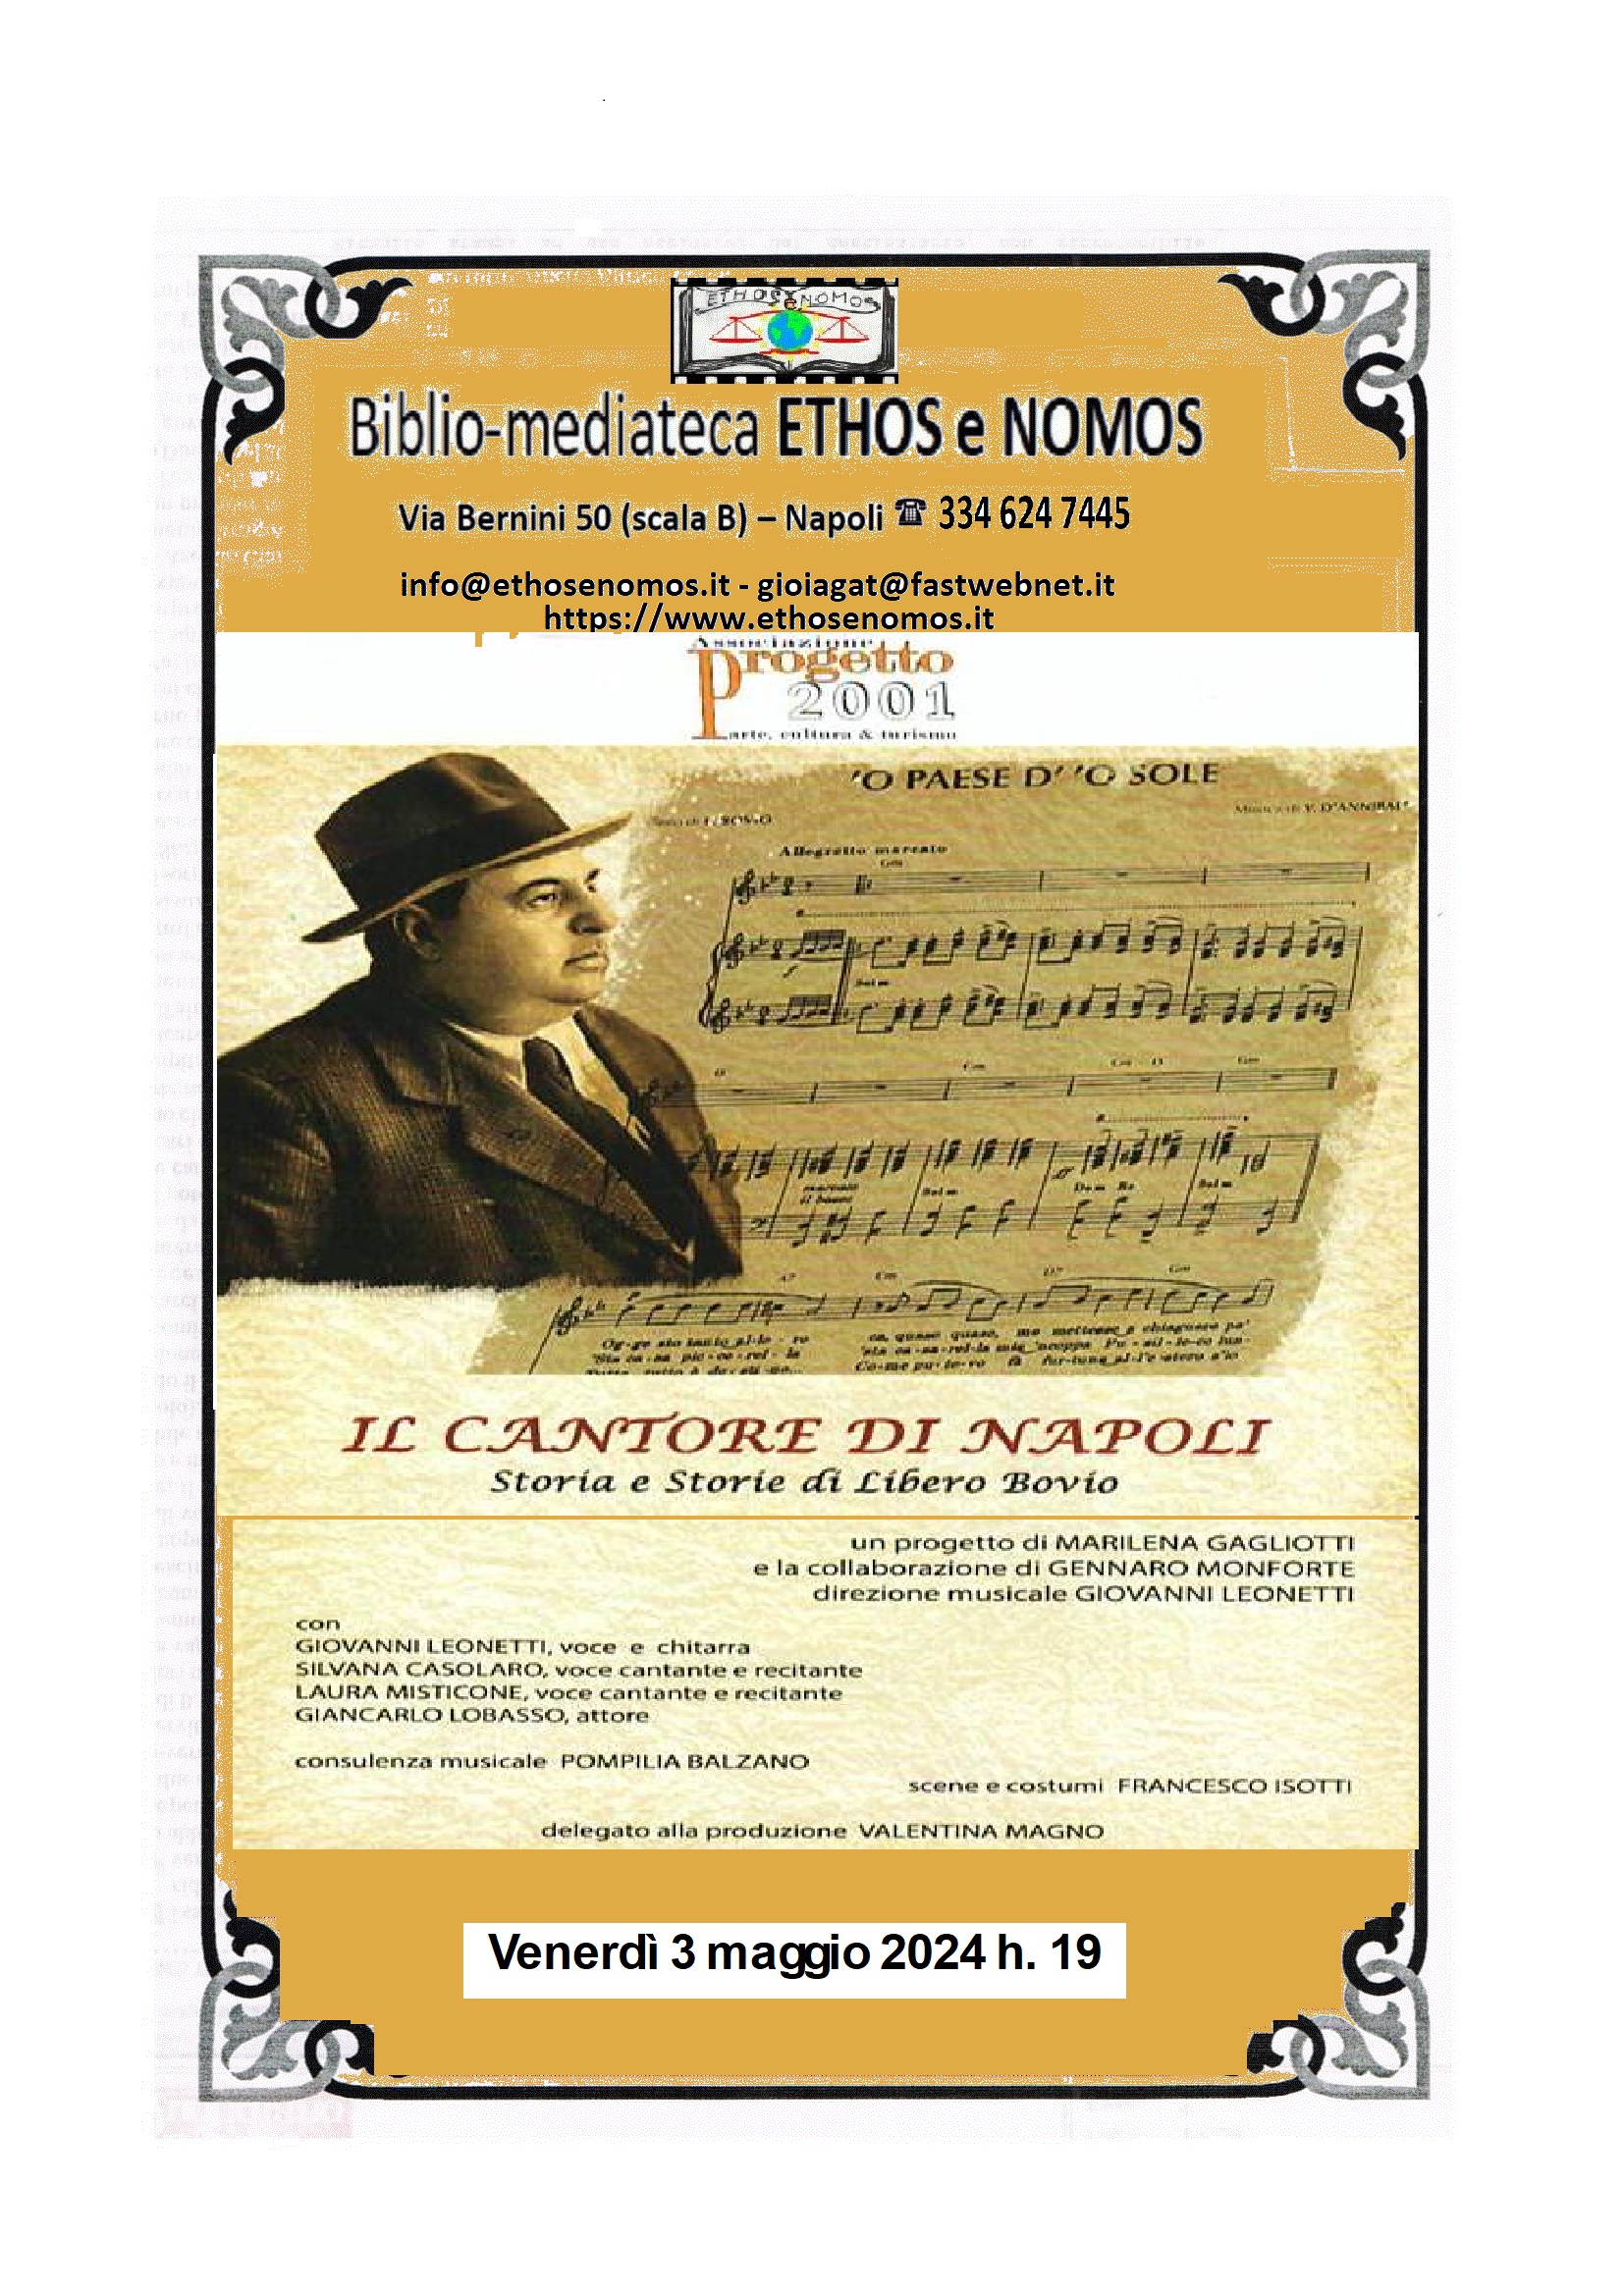 Libero Bovio, il cantore di Napoli